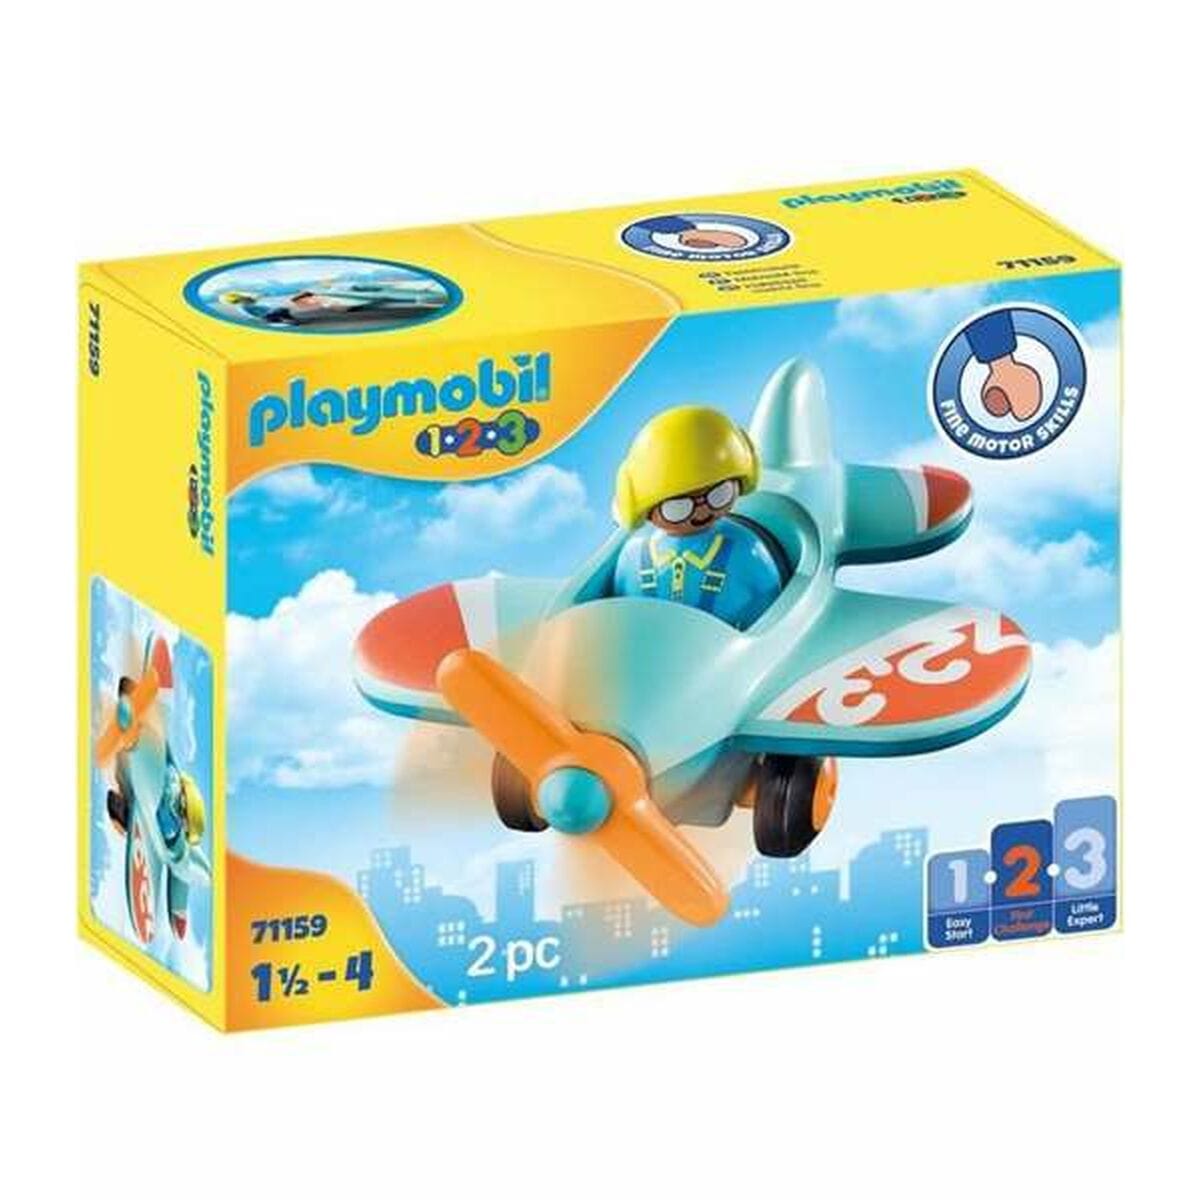 Playmobil Spielzeug | Kostüme > Spielzeug und Spiele > Weiteres spielzeug Playset Playmobil 1.2.3 Plane 71159 2 Stücke